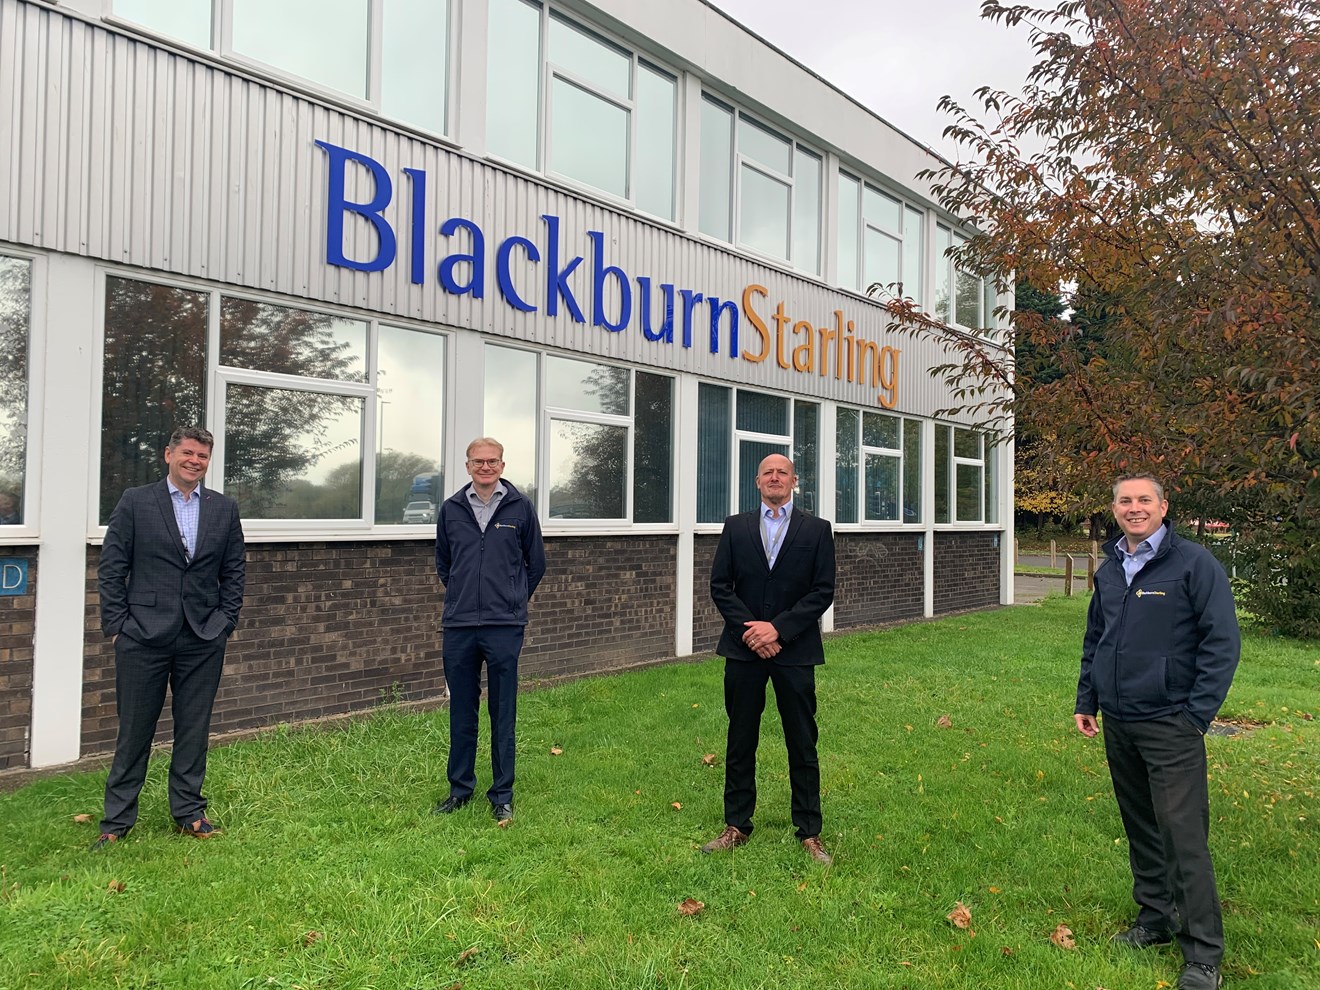 Blackburn Starling approved as Siemens Sivacon S8 Power Partner: Blackburn Starling